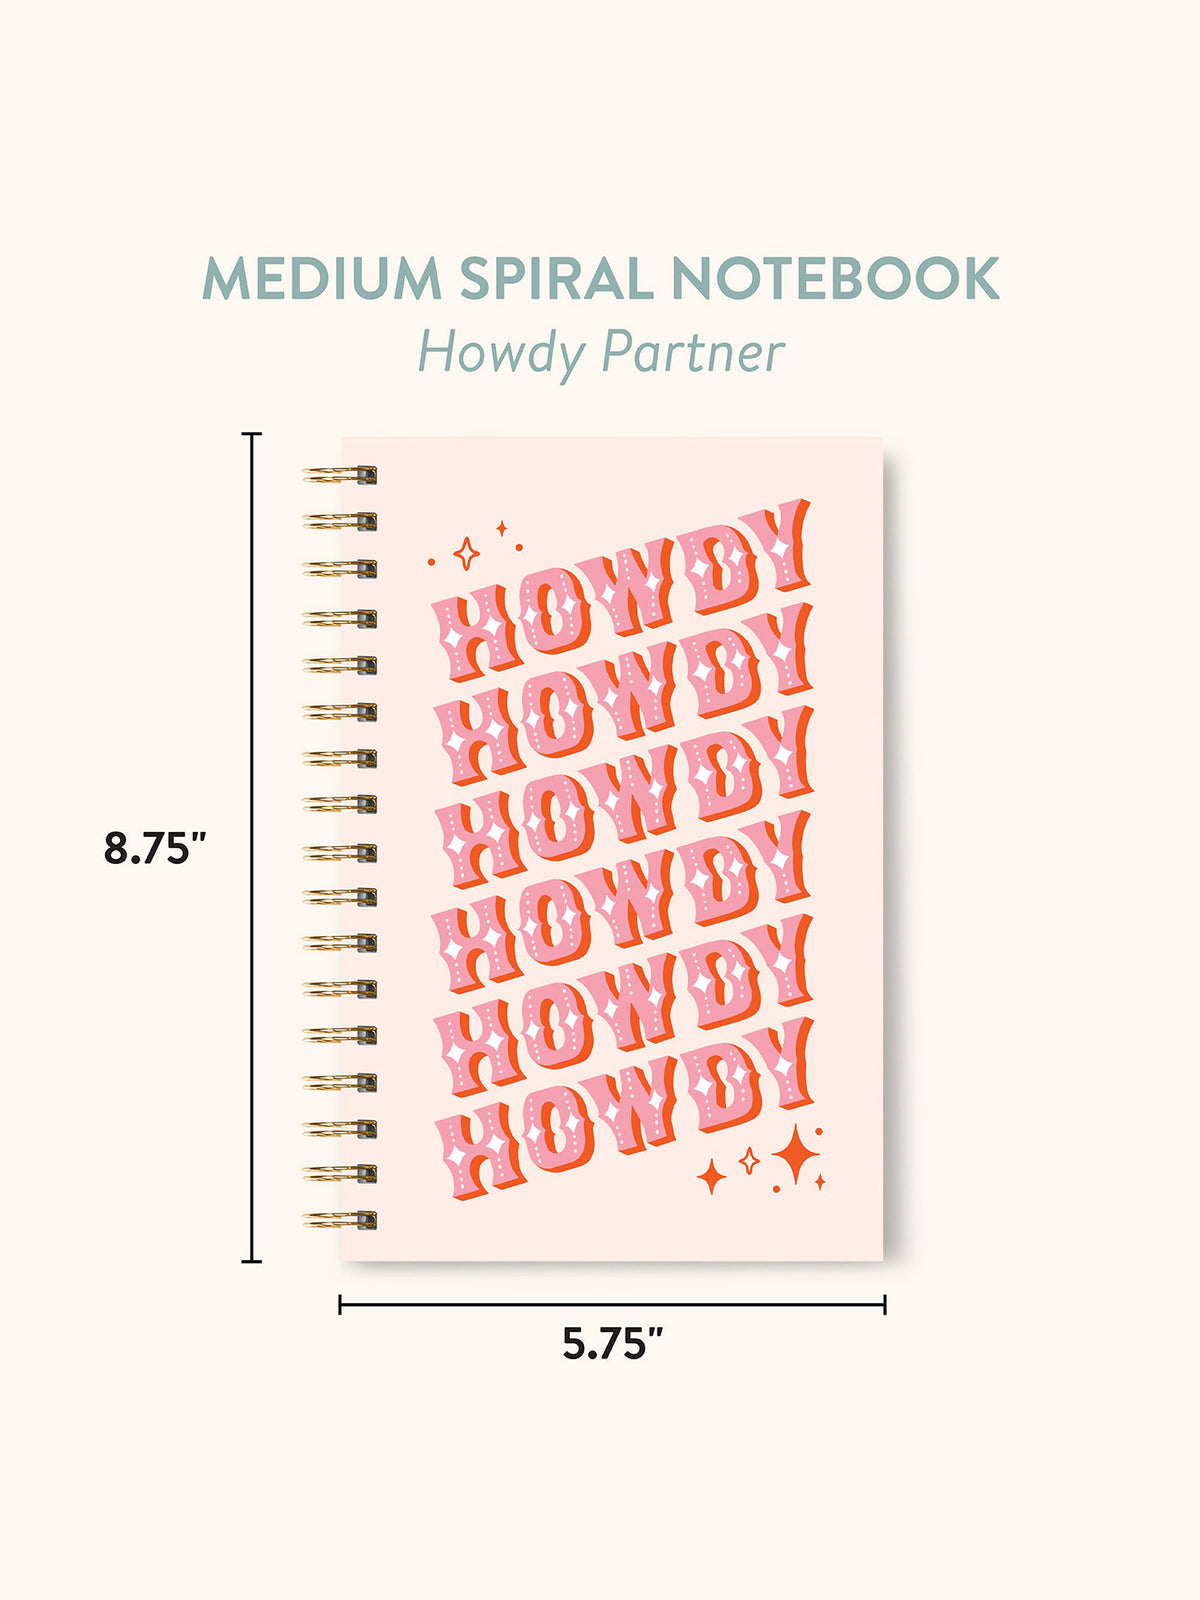 Howdy Partner Medium Spiral Notebook